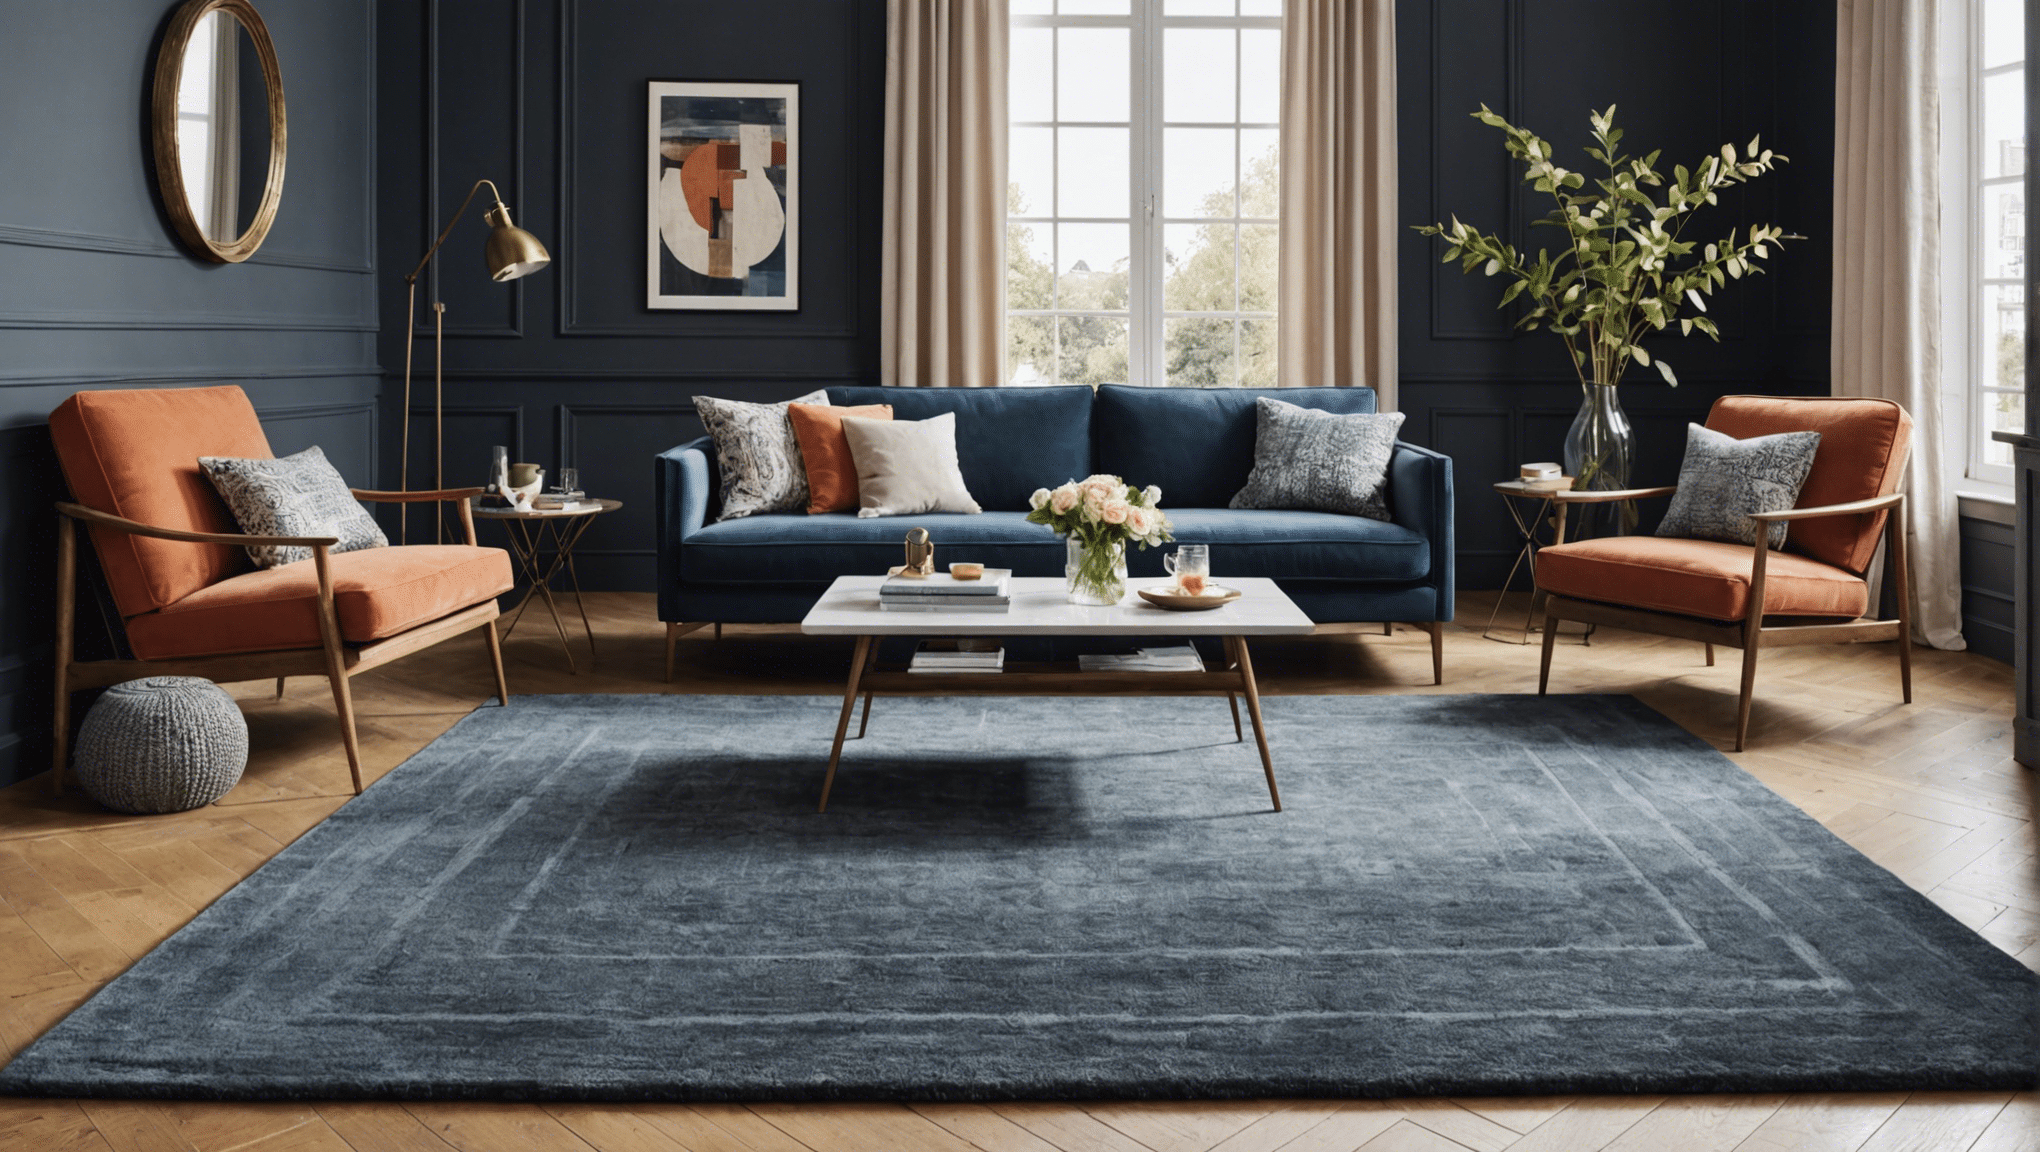 découvrez les raisons de choisir un tapis maison du monde pour sublimer votre intérieur, entre confort, style et qualité chez vous.